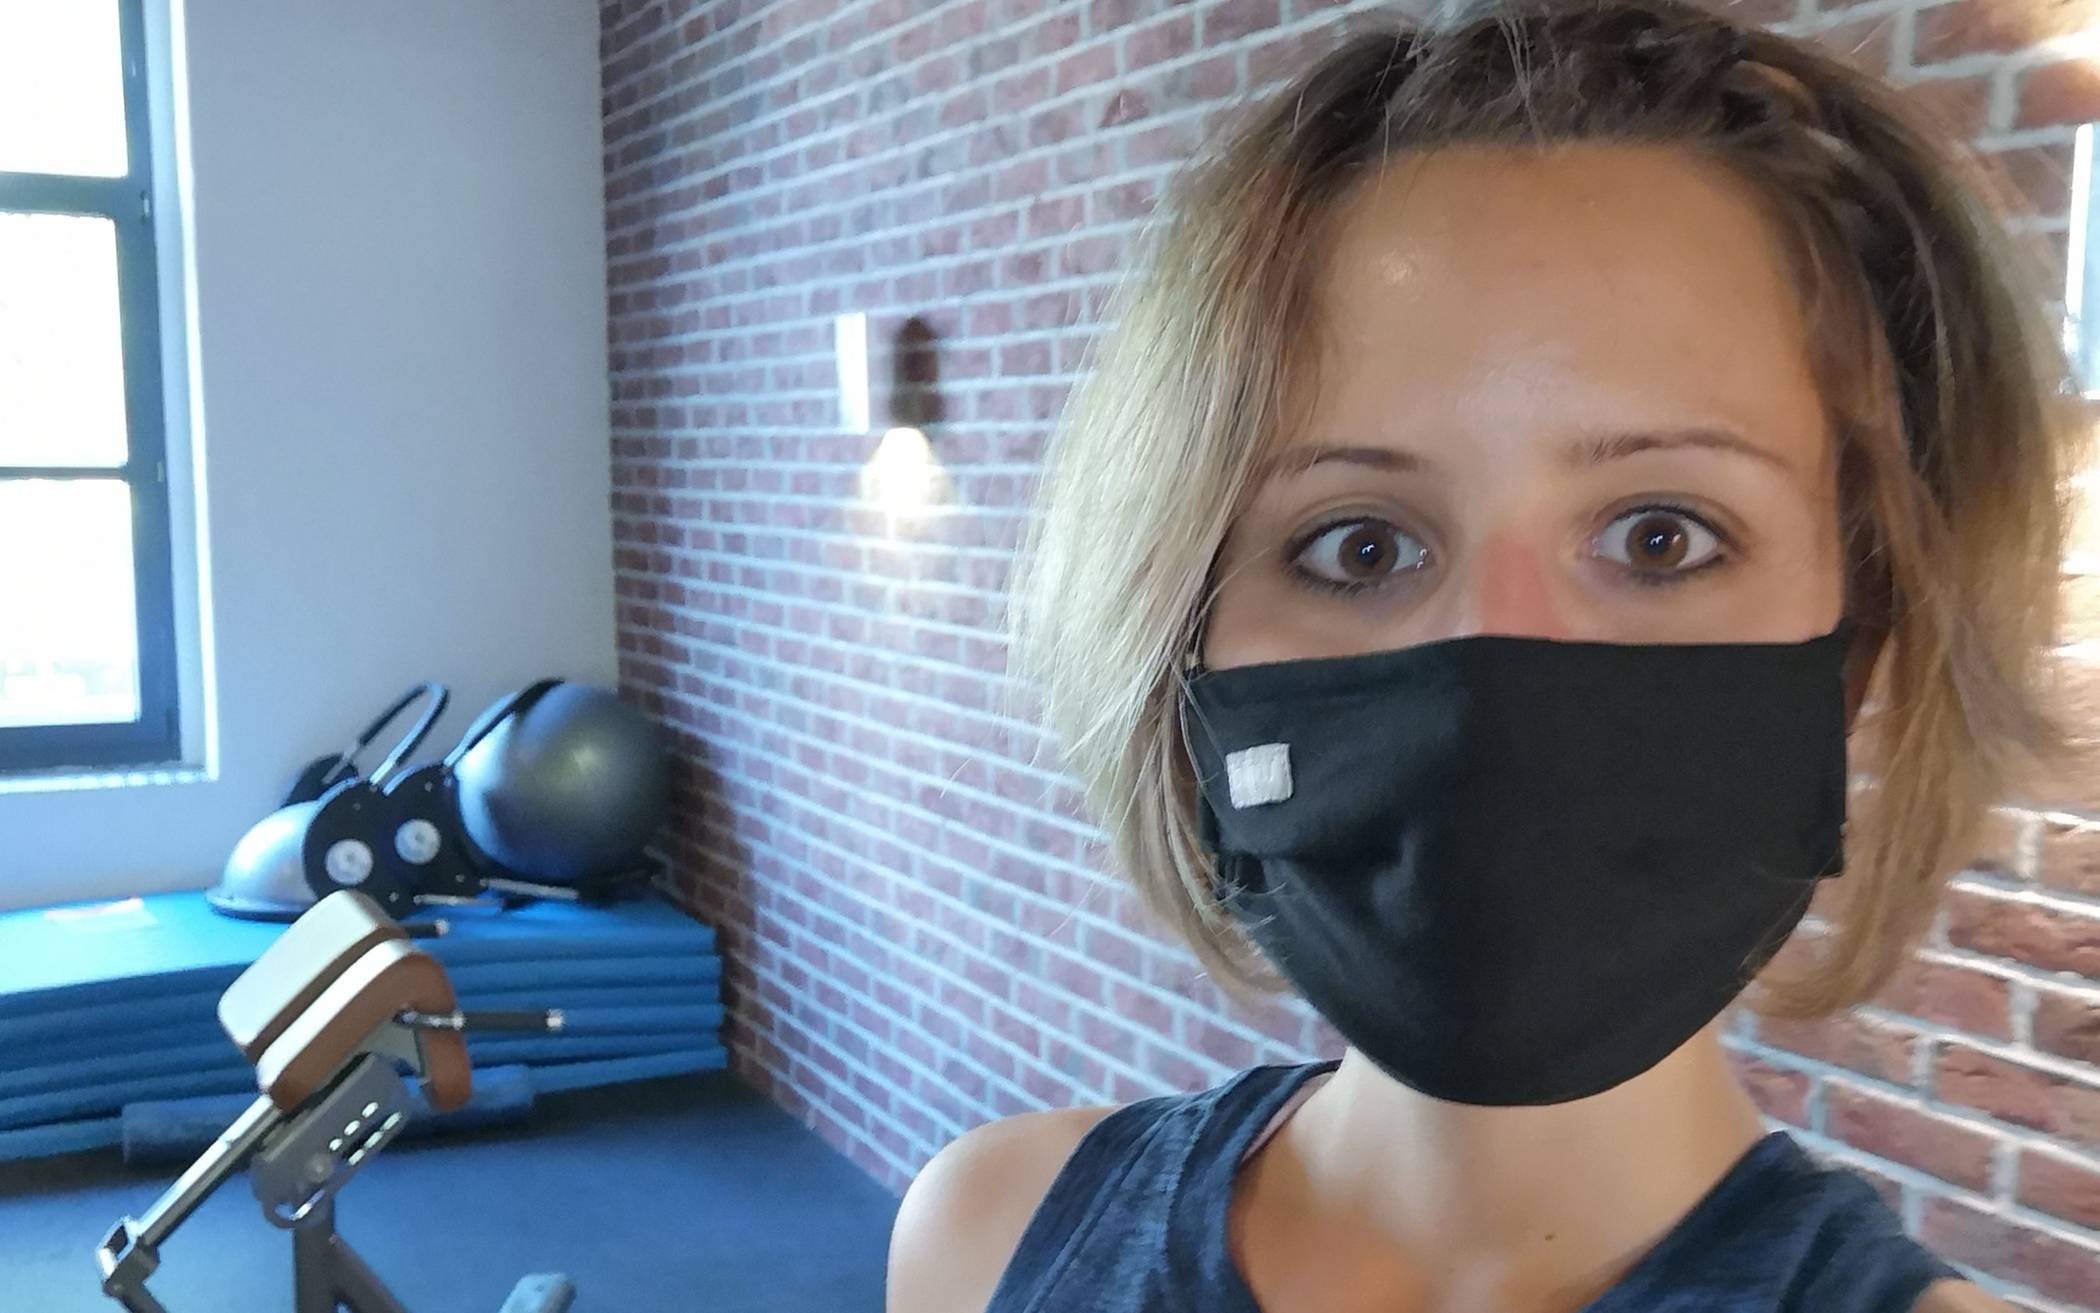  Maskenpflicht beim Training, zumindest wenn man sich durchs Fitnessstudio bewegt.  